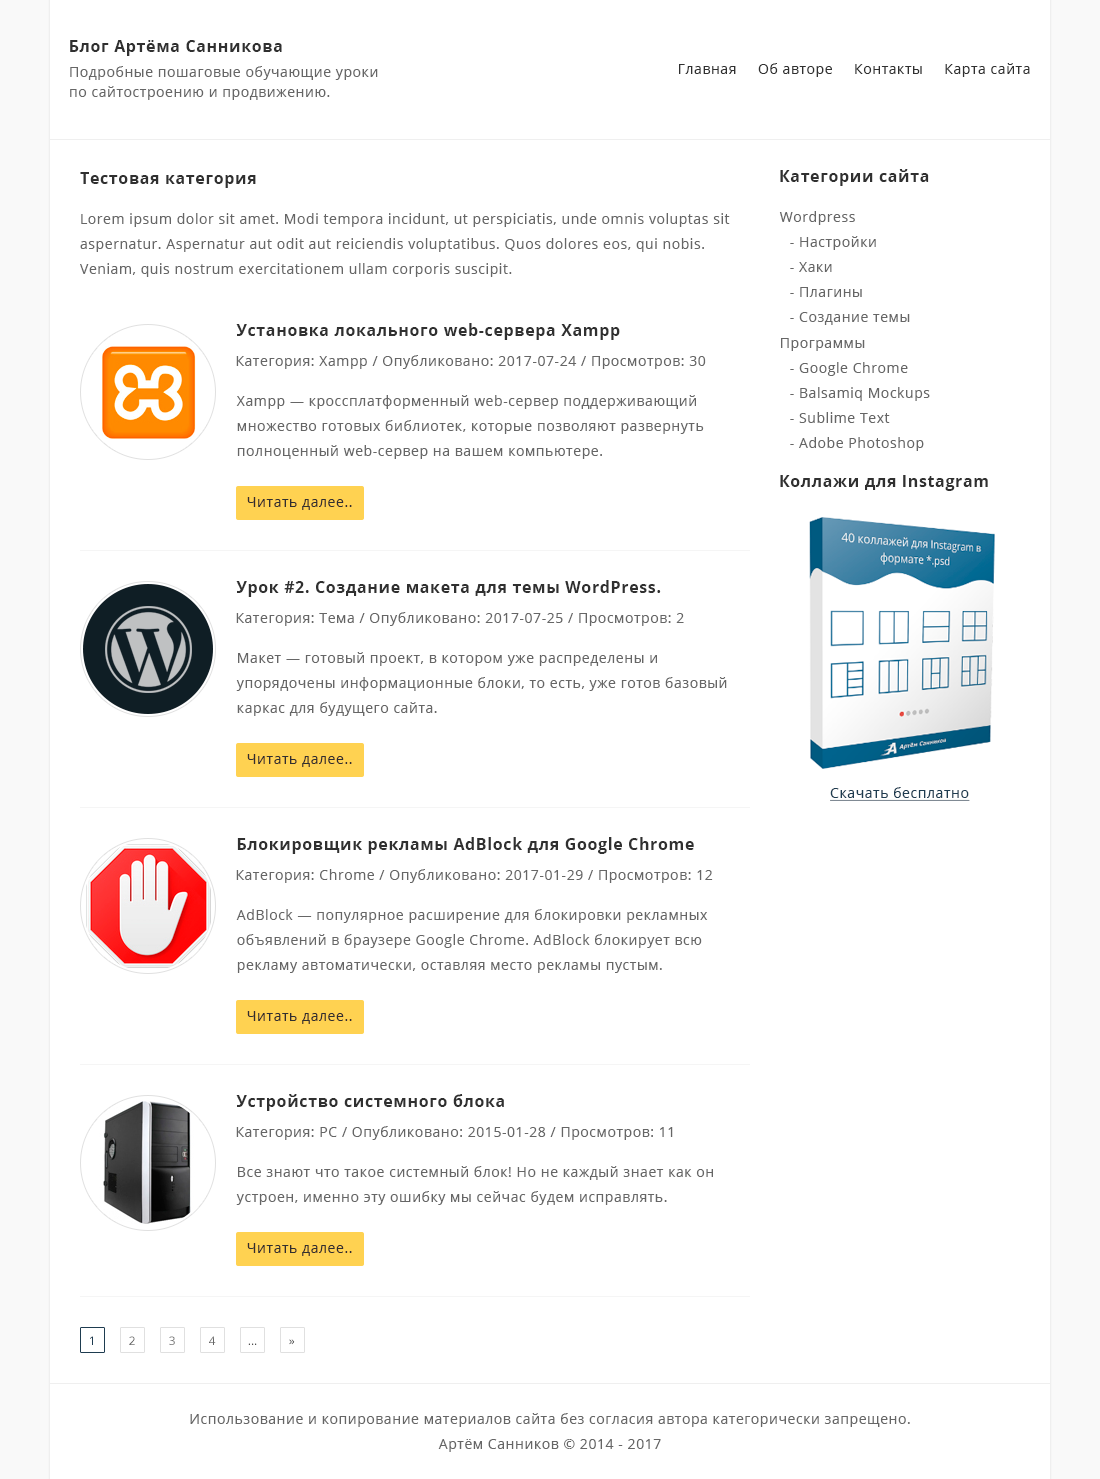 Дизайн категории для темы WordPress в Adobe Photoshop